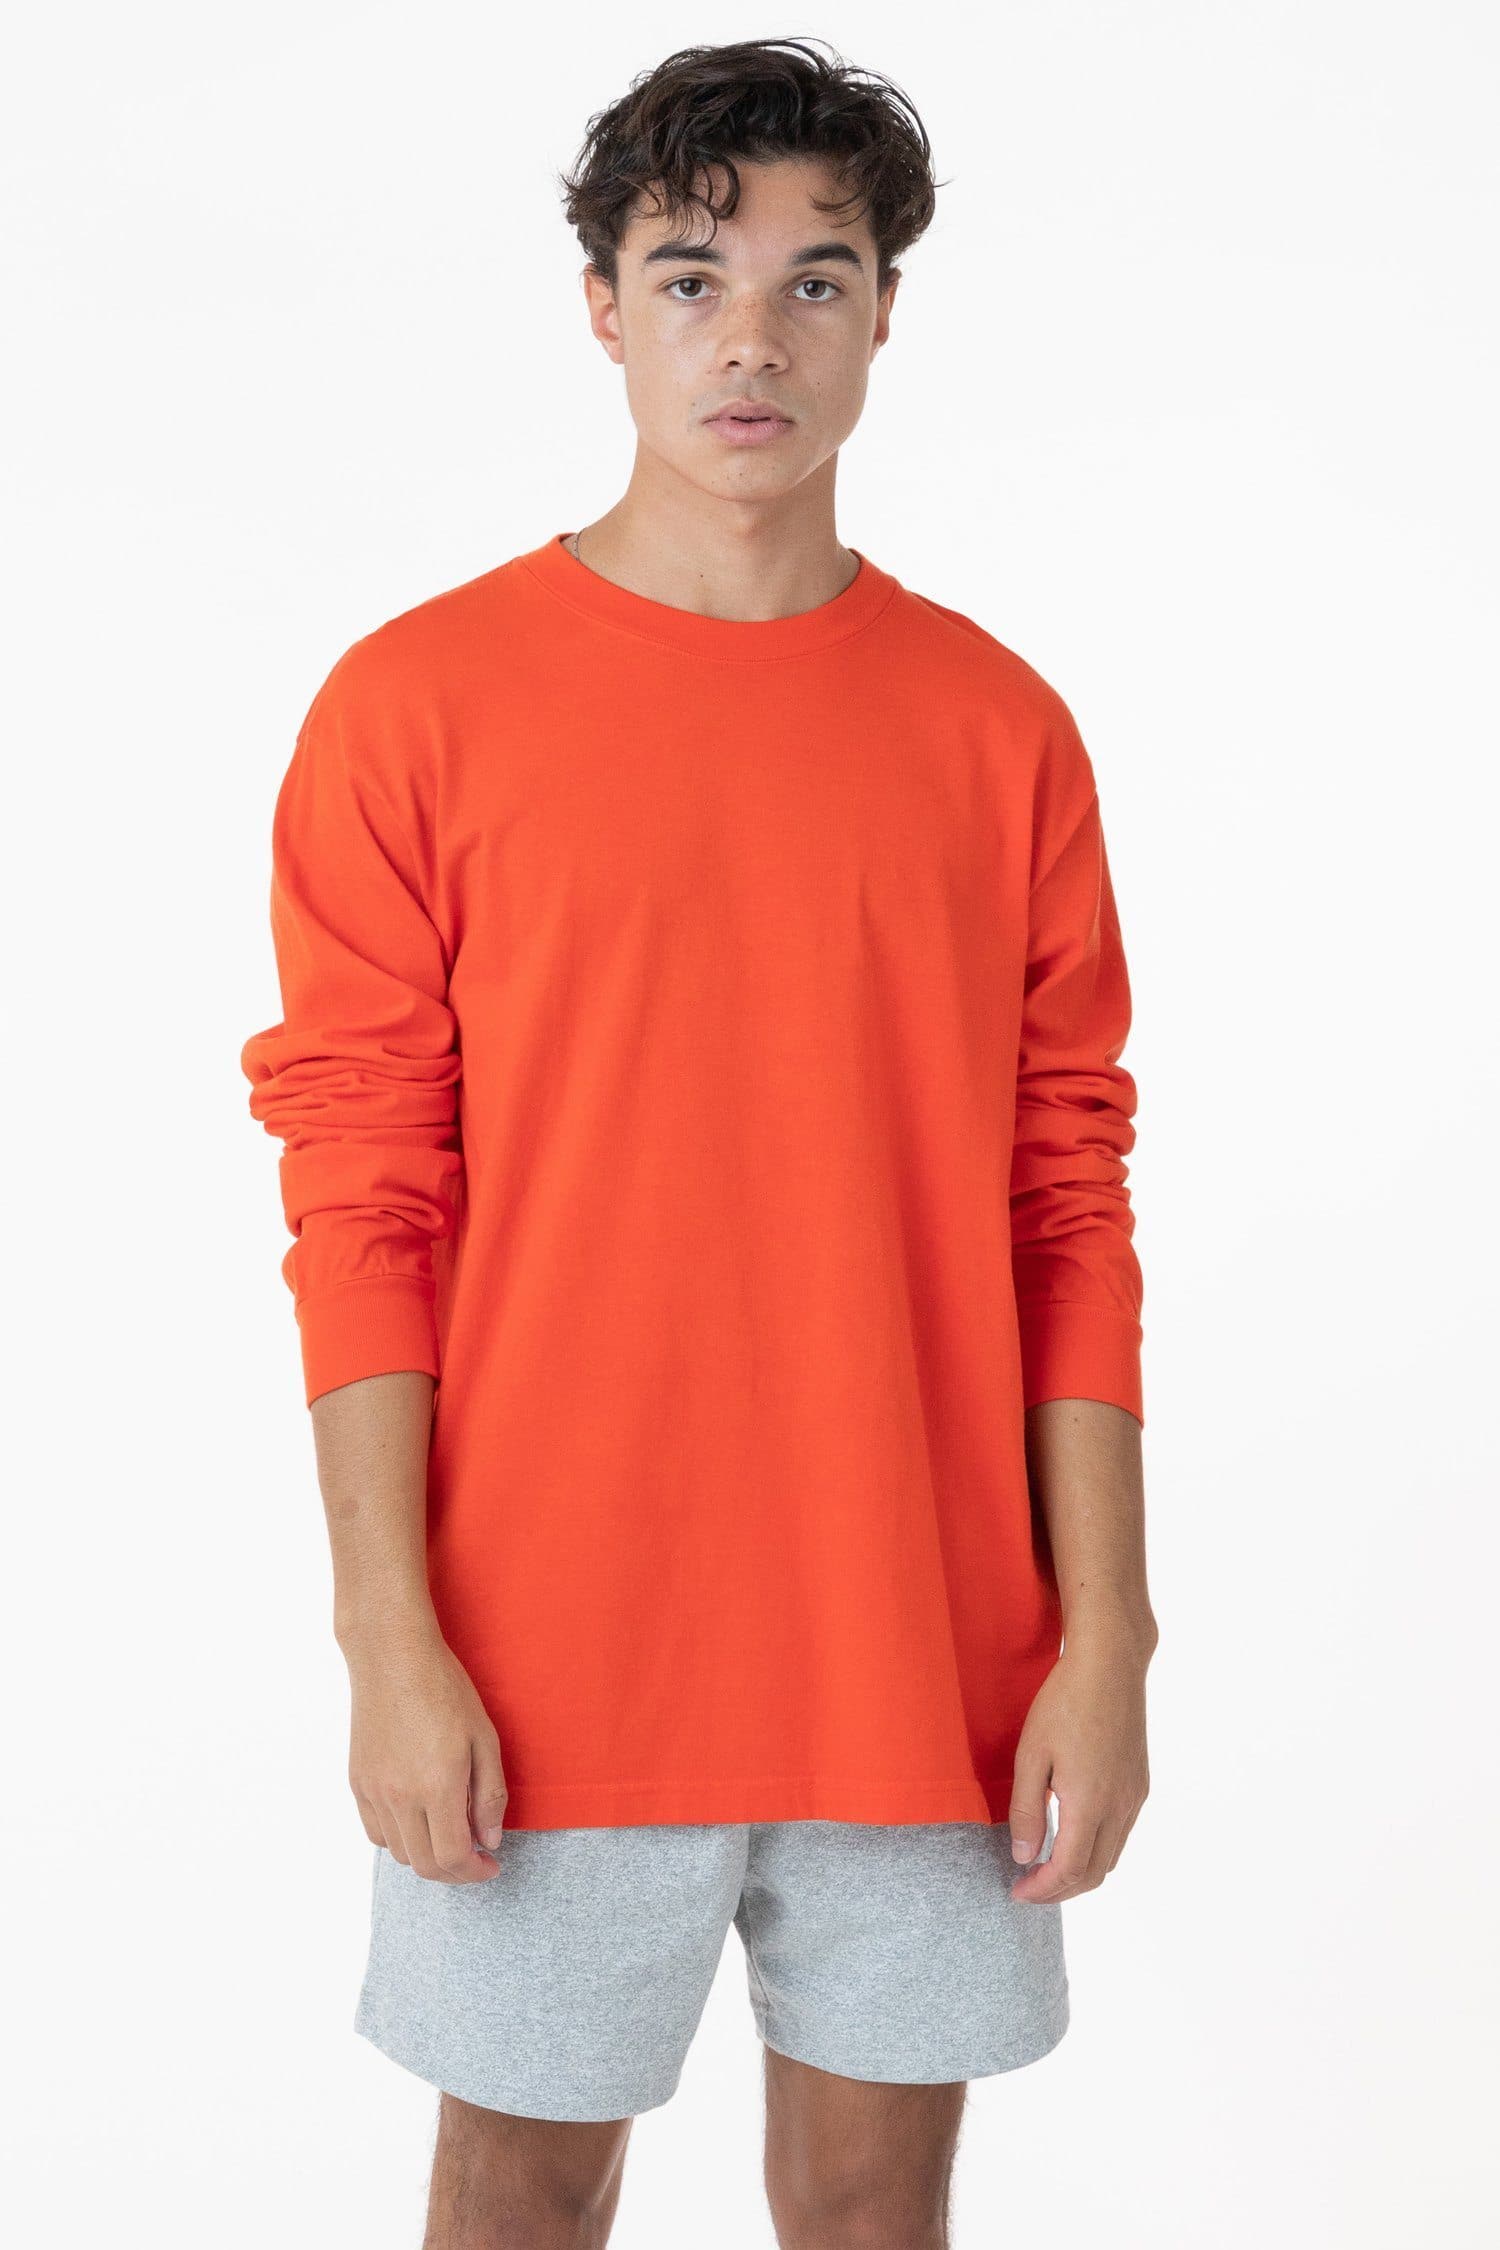 Los Angeles Apparel - HF07GD Mix - Garment Dye Heavy Fleece Pullover C –  Sky Sportswear